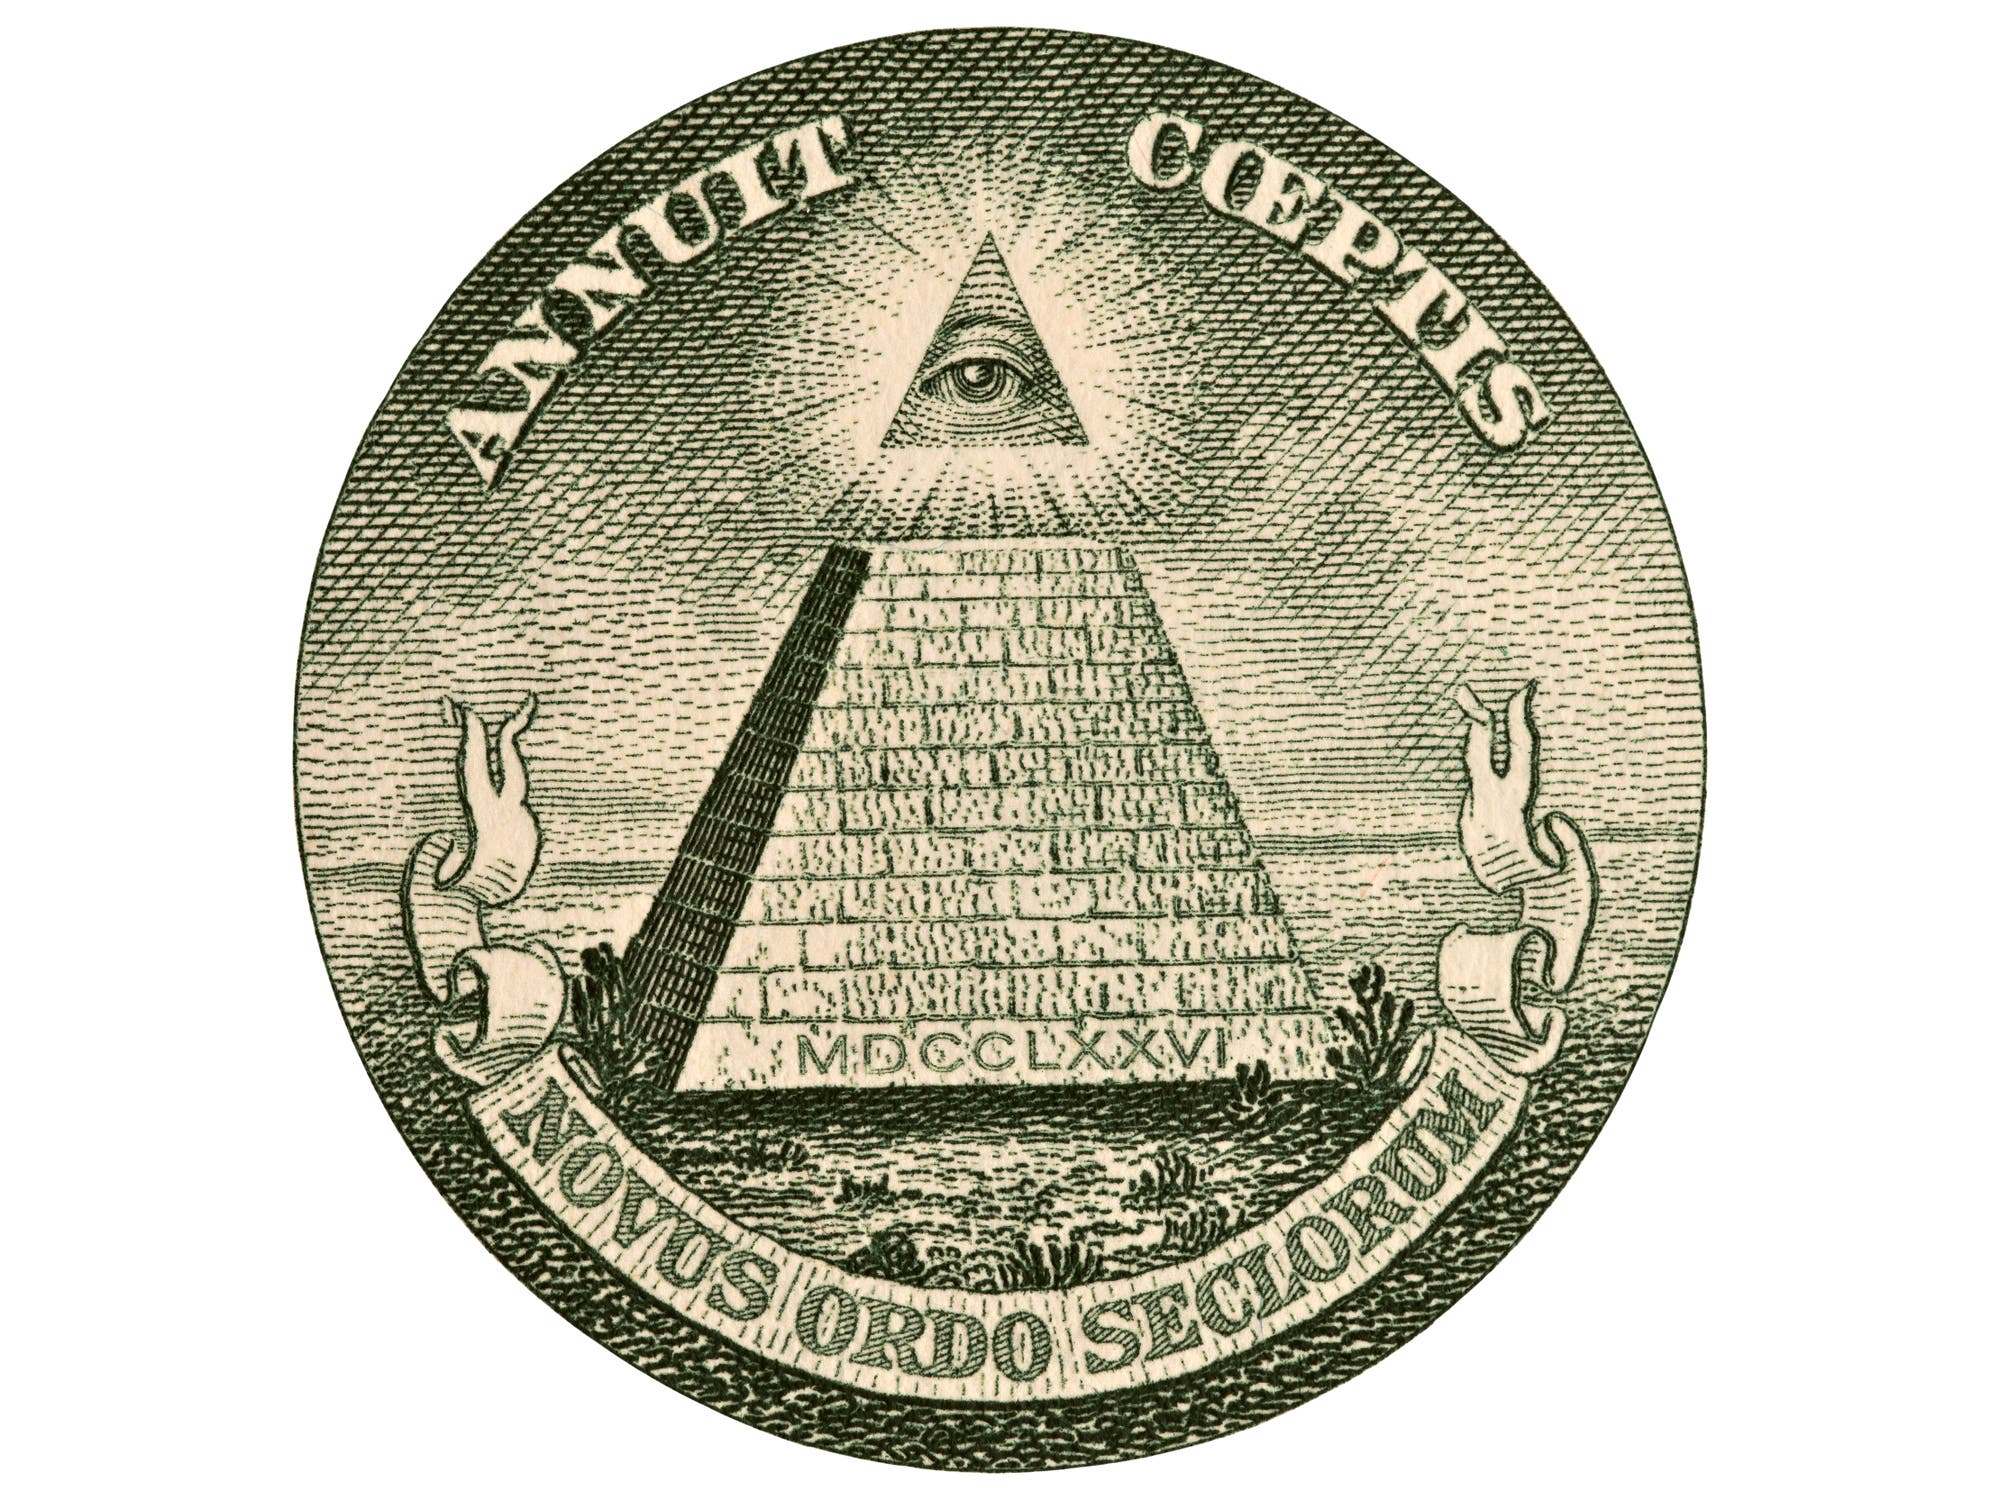 Dollarnote mit vermeintlichem "Illuminati"-Siegel 